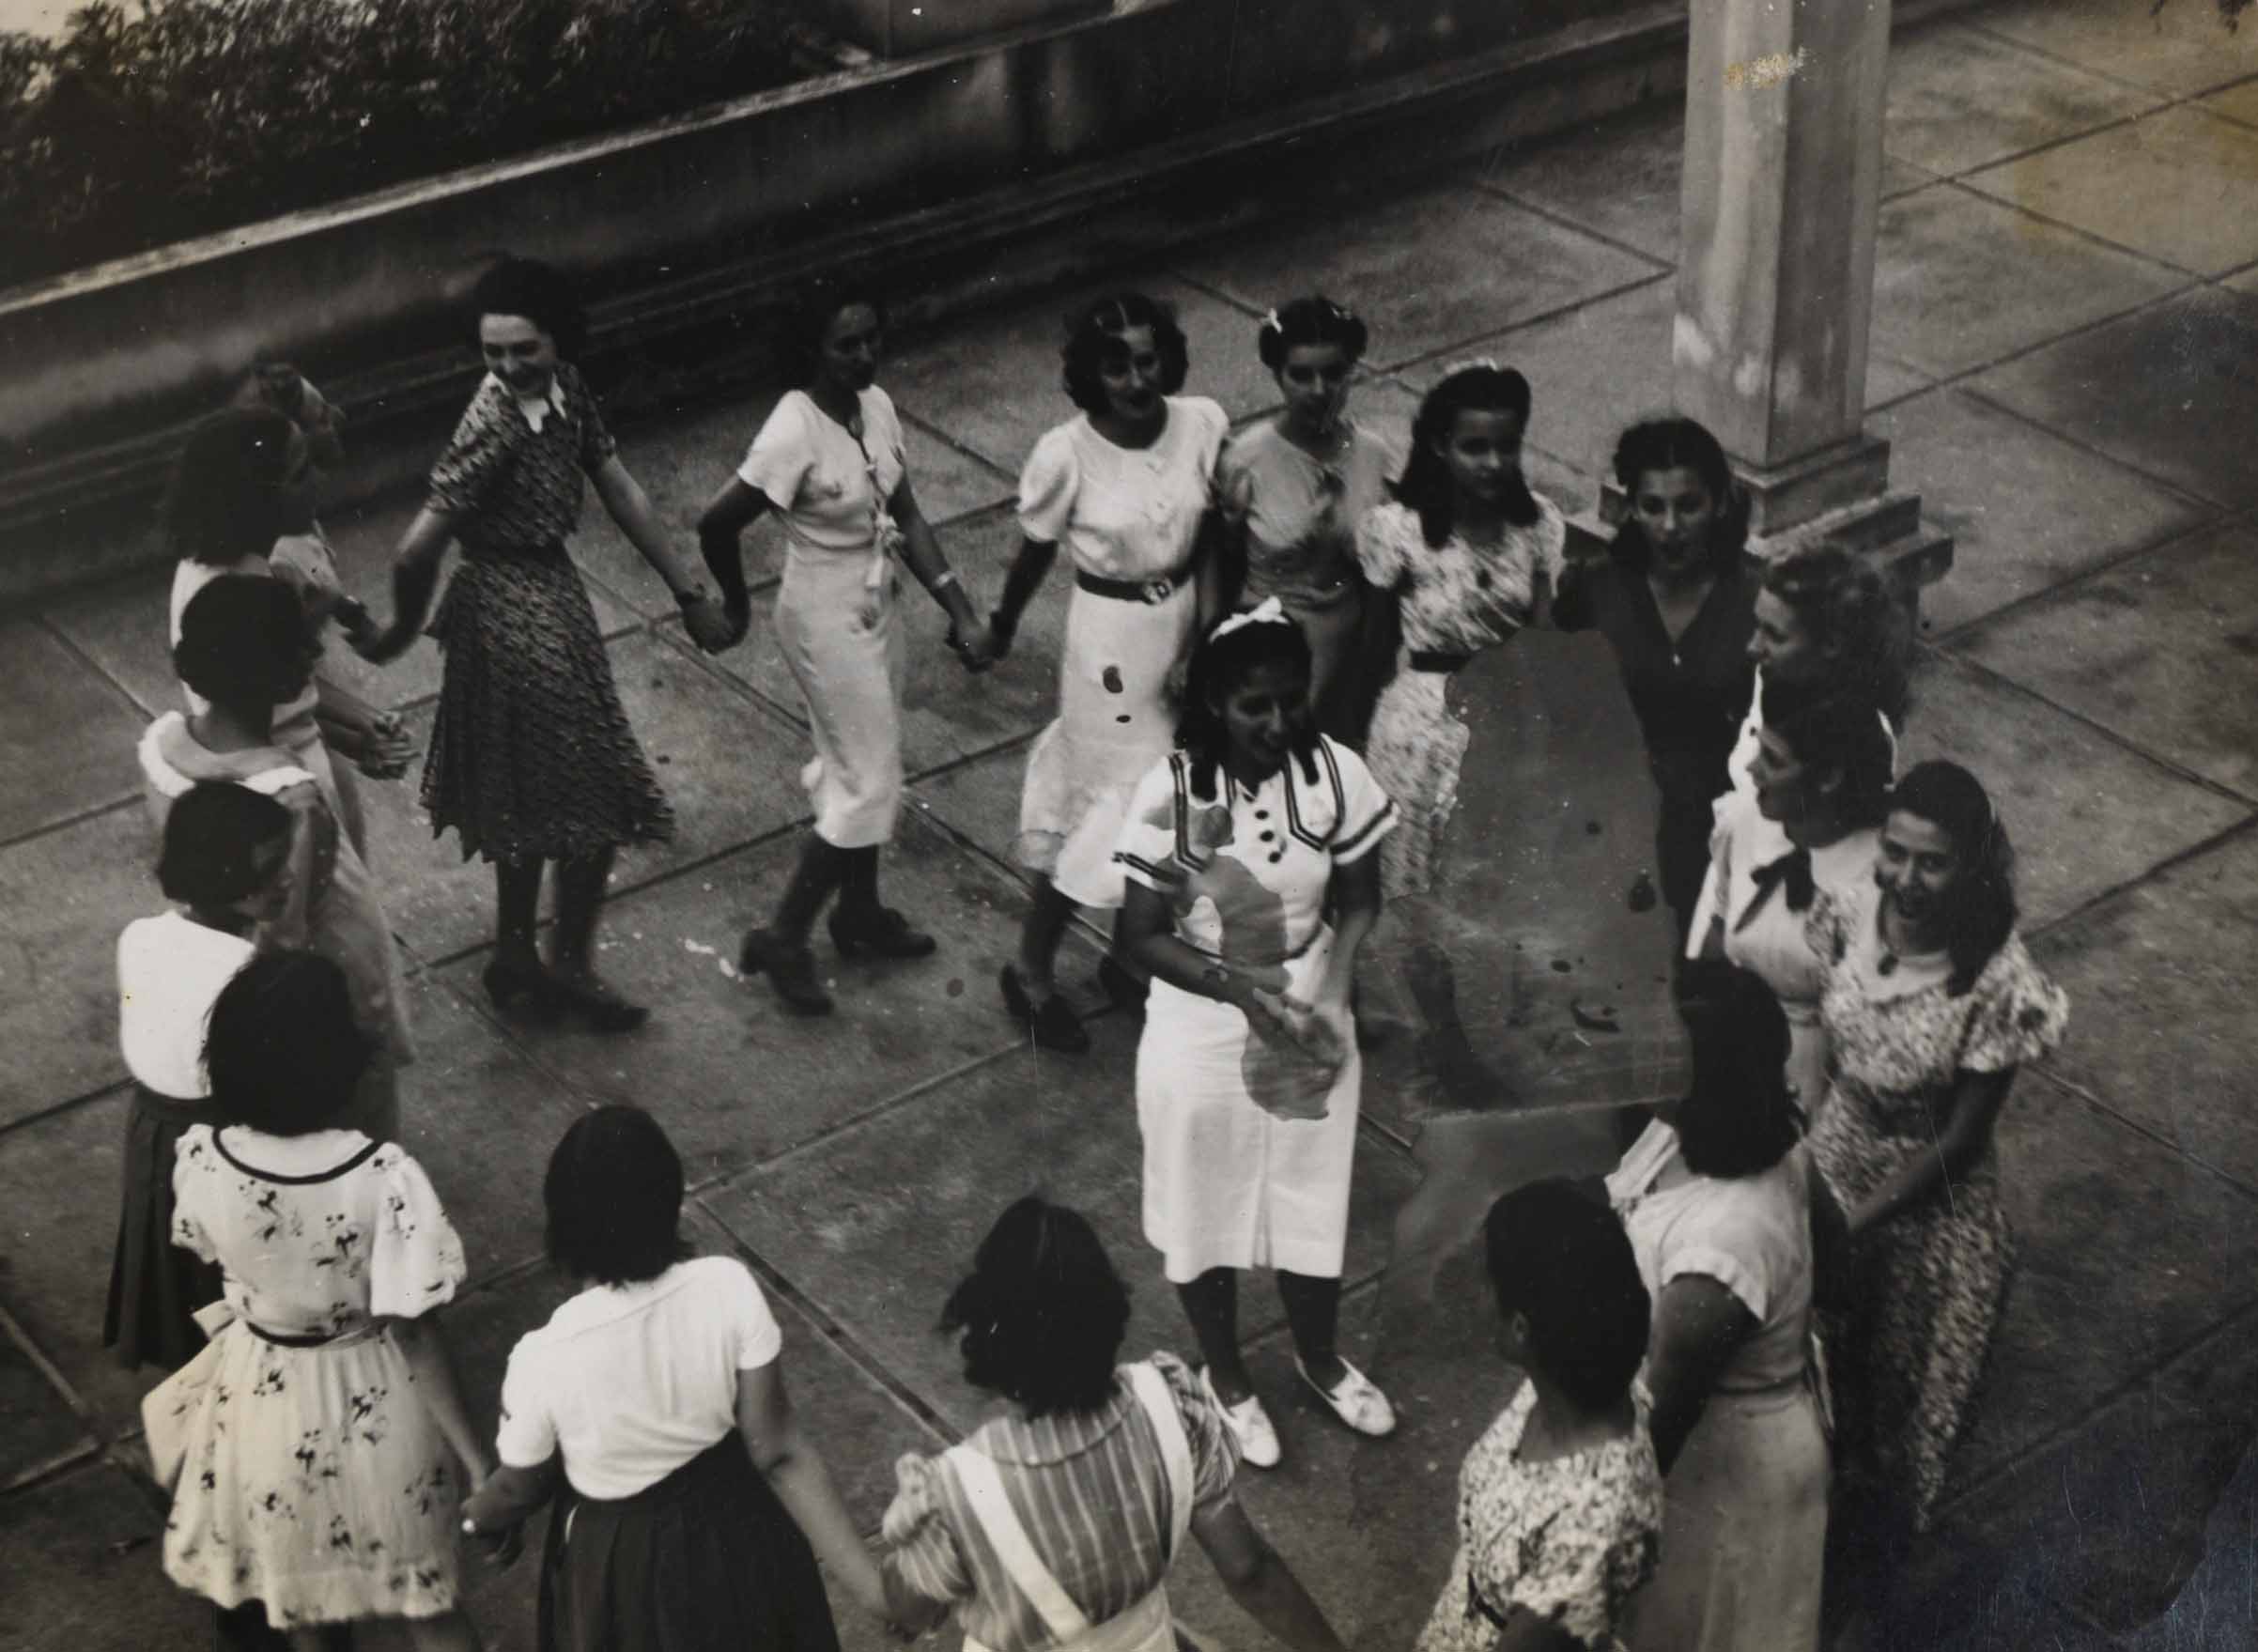 Foto tirada no terraço do jornal A Noite durante edição do programa Curiosidades Musicais sobre Cantigas de Roda, 1938